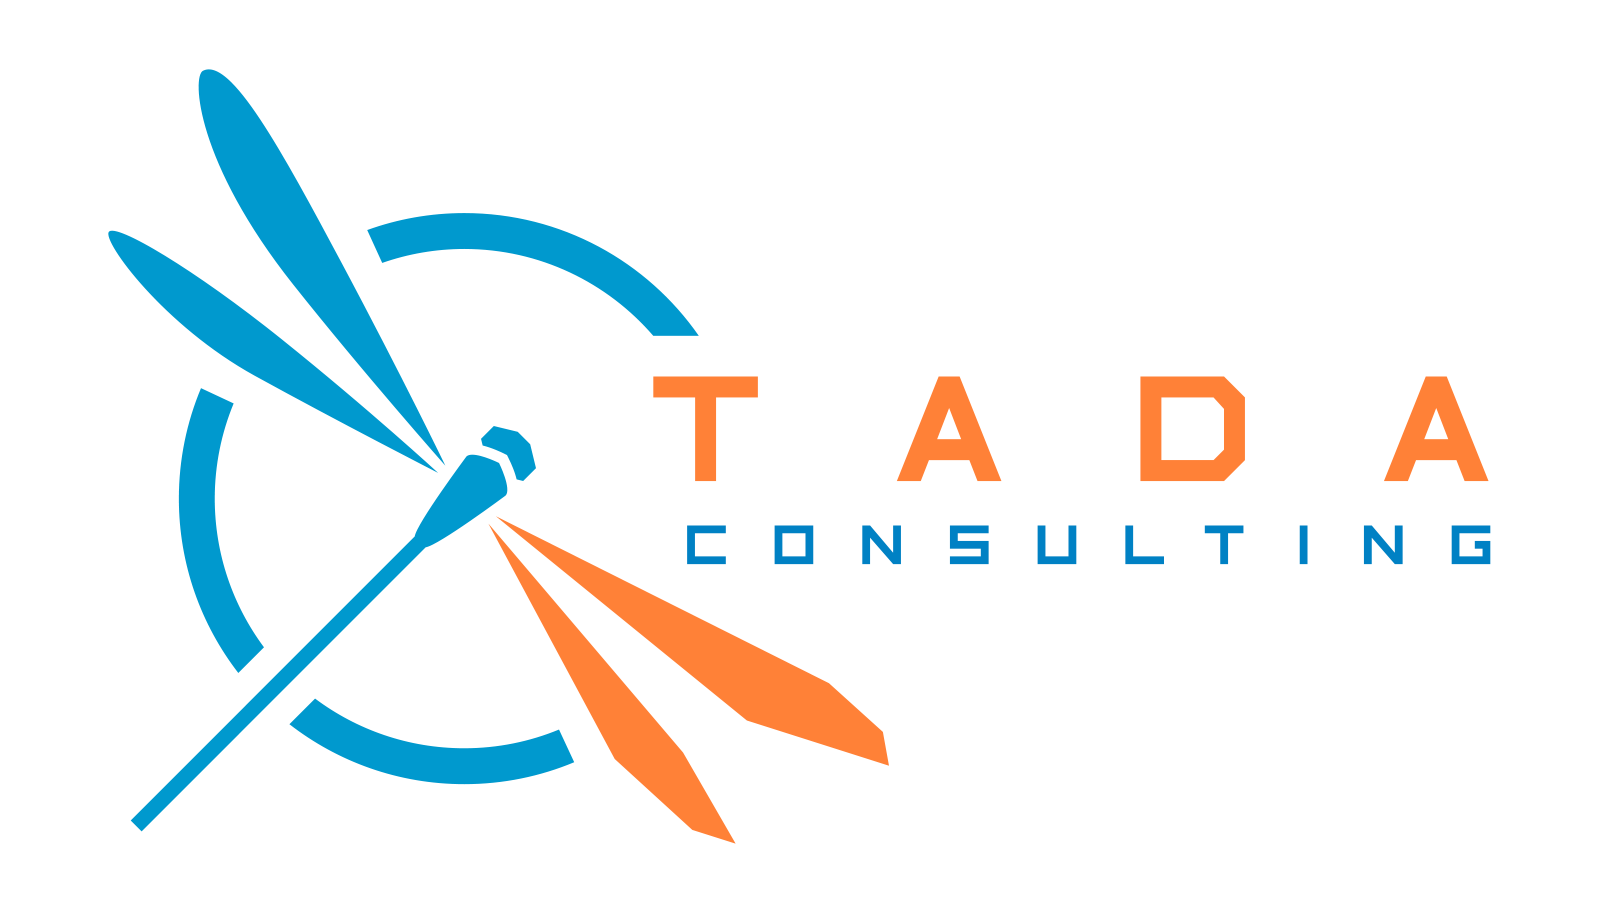 TADA Consulting